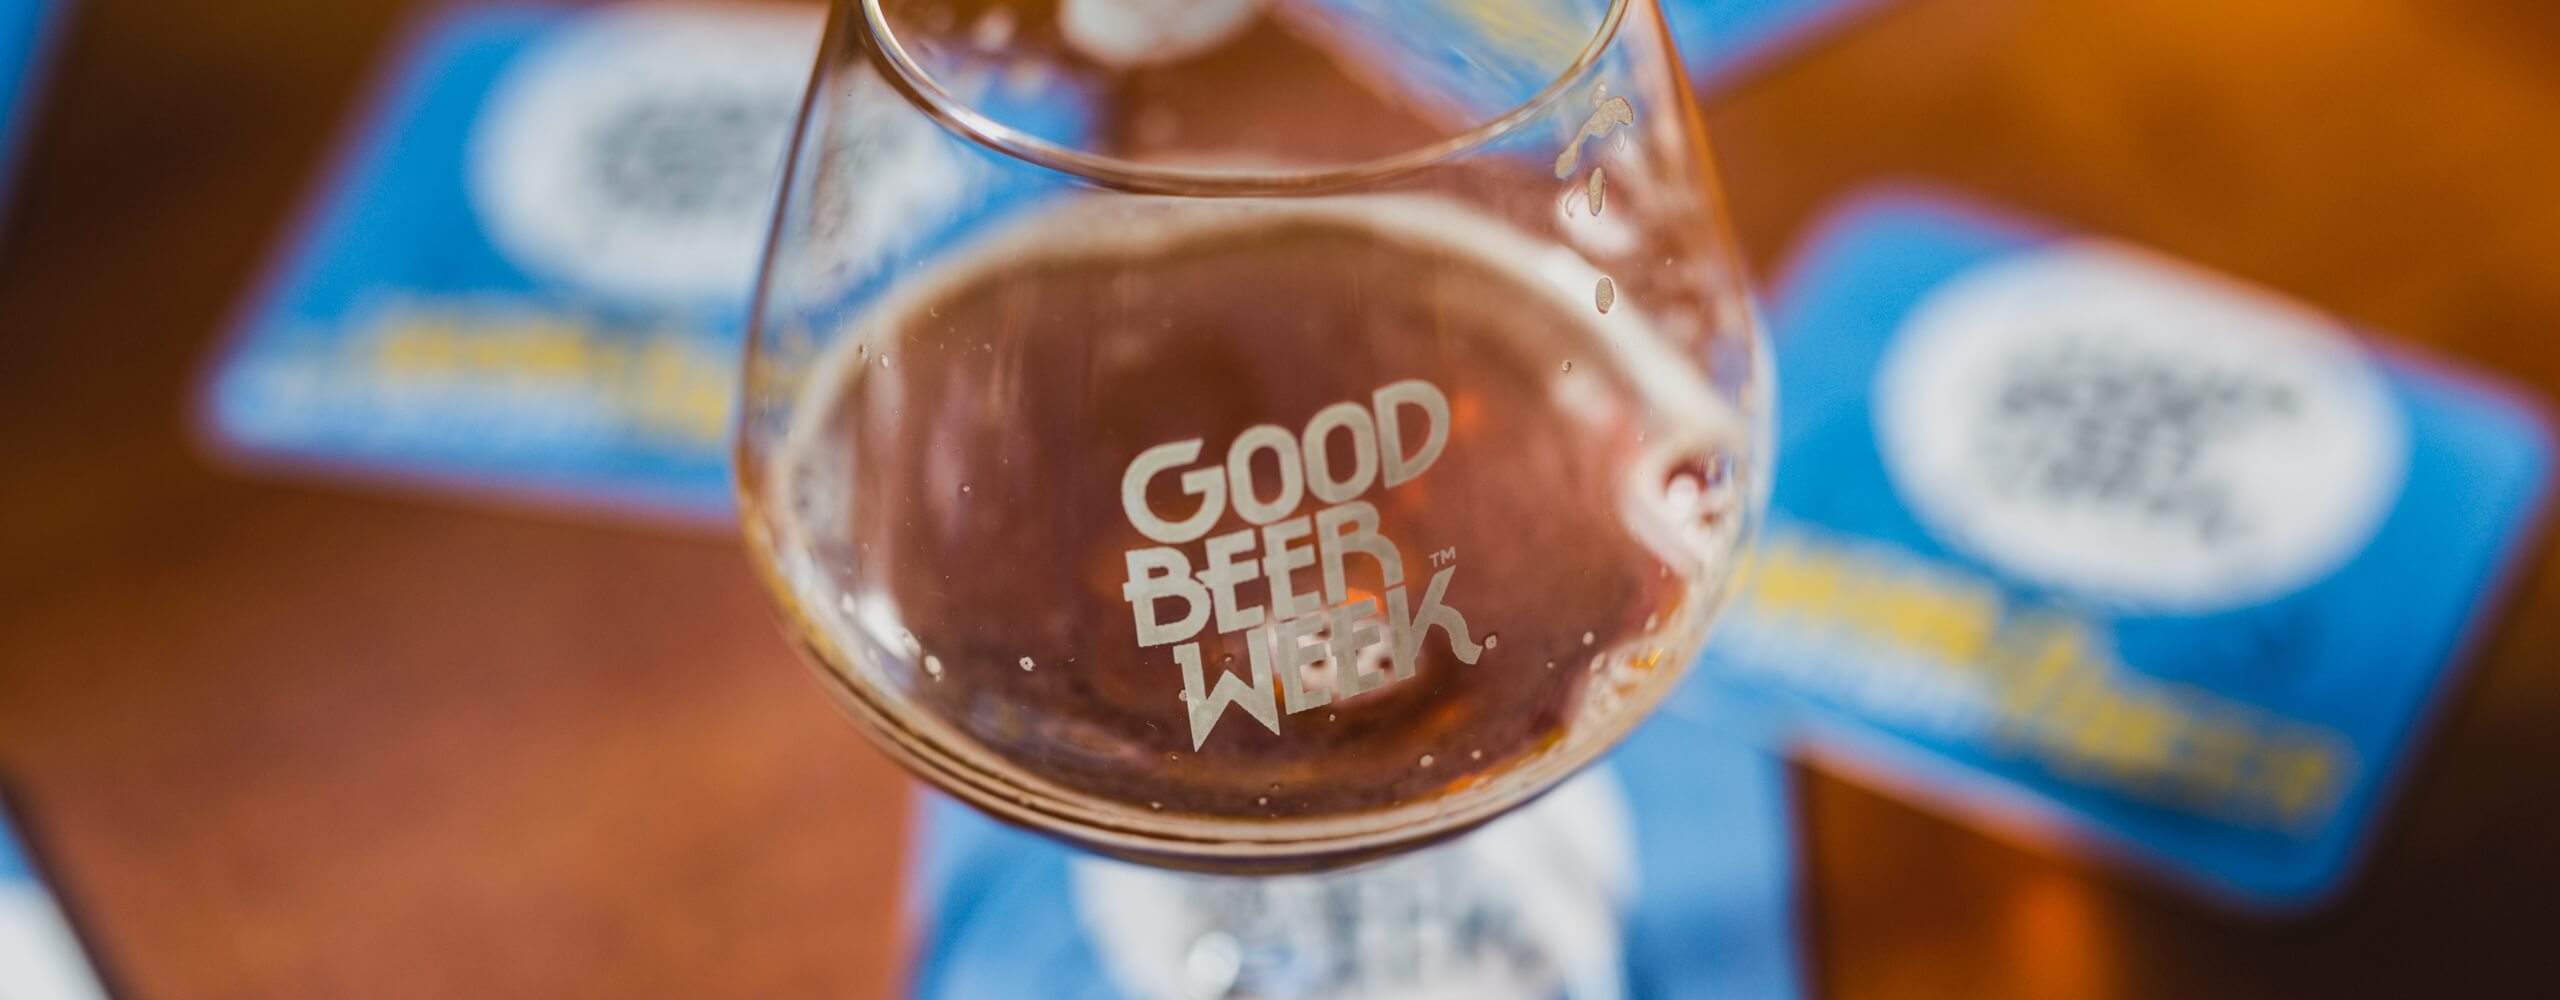 Good Beer Week 2019